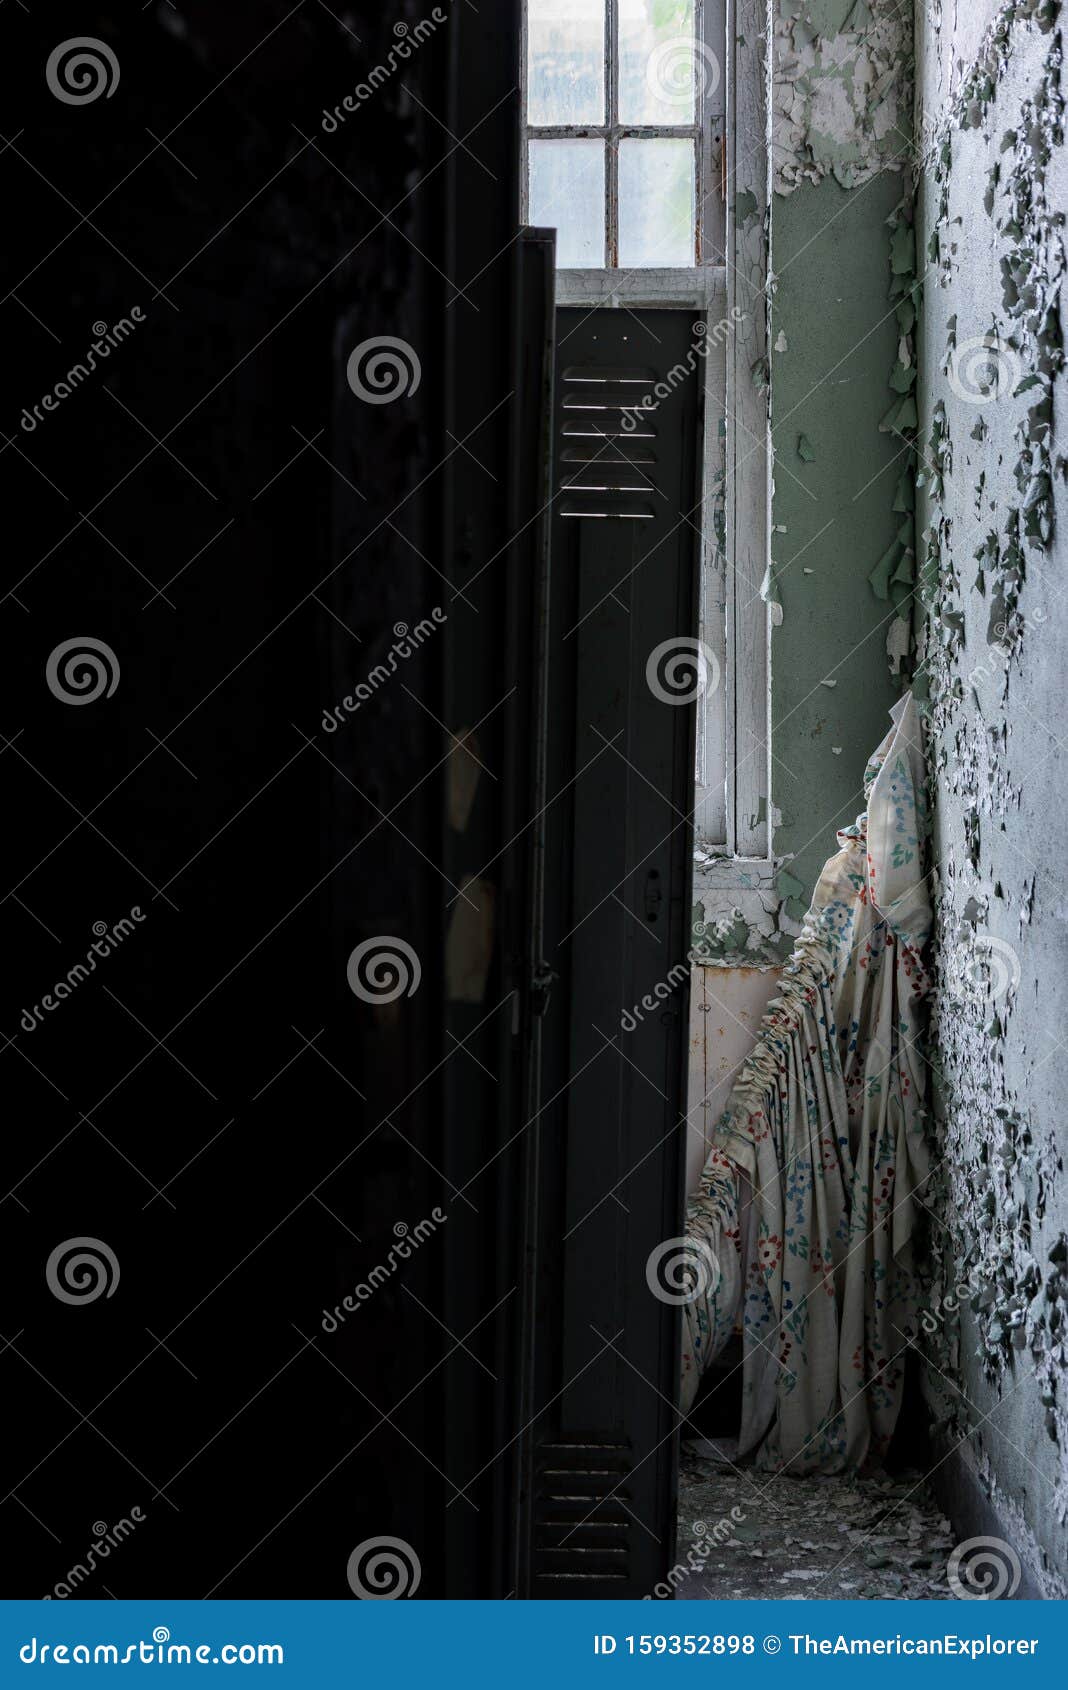 Dijk Land helder Derelict Locker Room + Gestorte Gordijnen - Verlaten Central Islip State  Hospital - New York Stock Foto - Image of glas, geduldig: 159352898